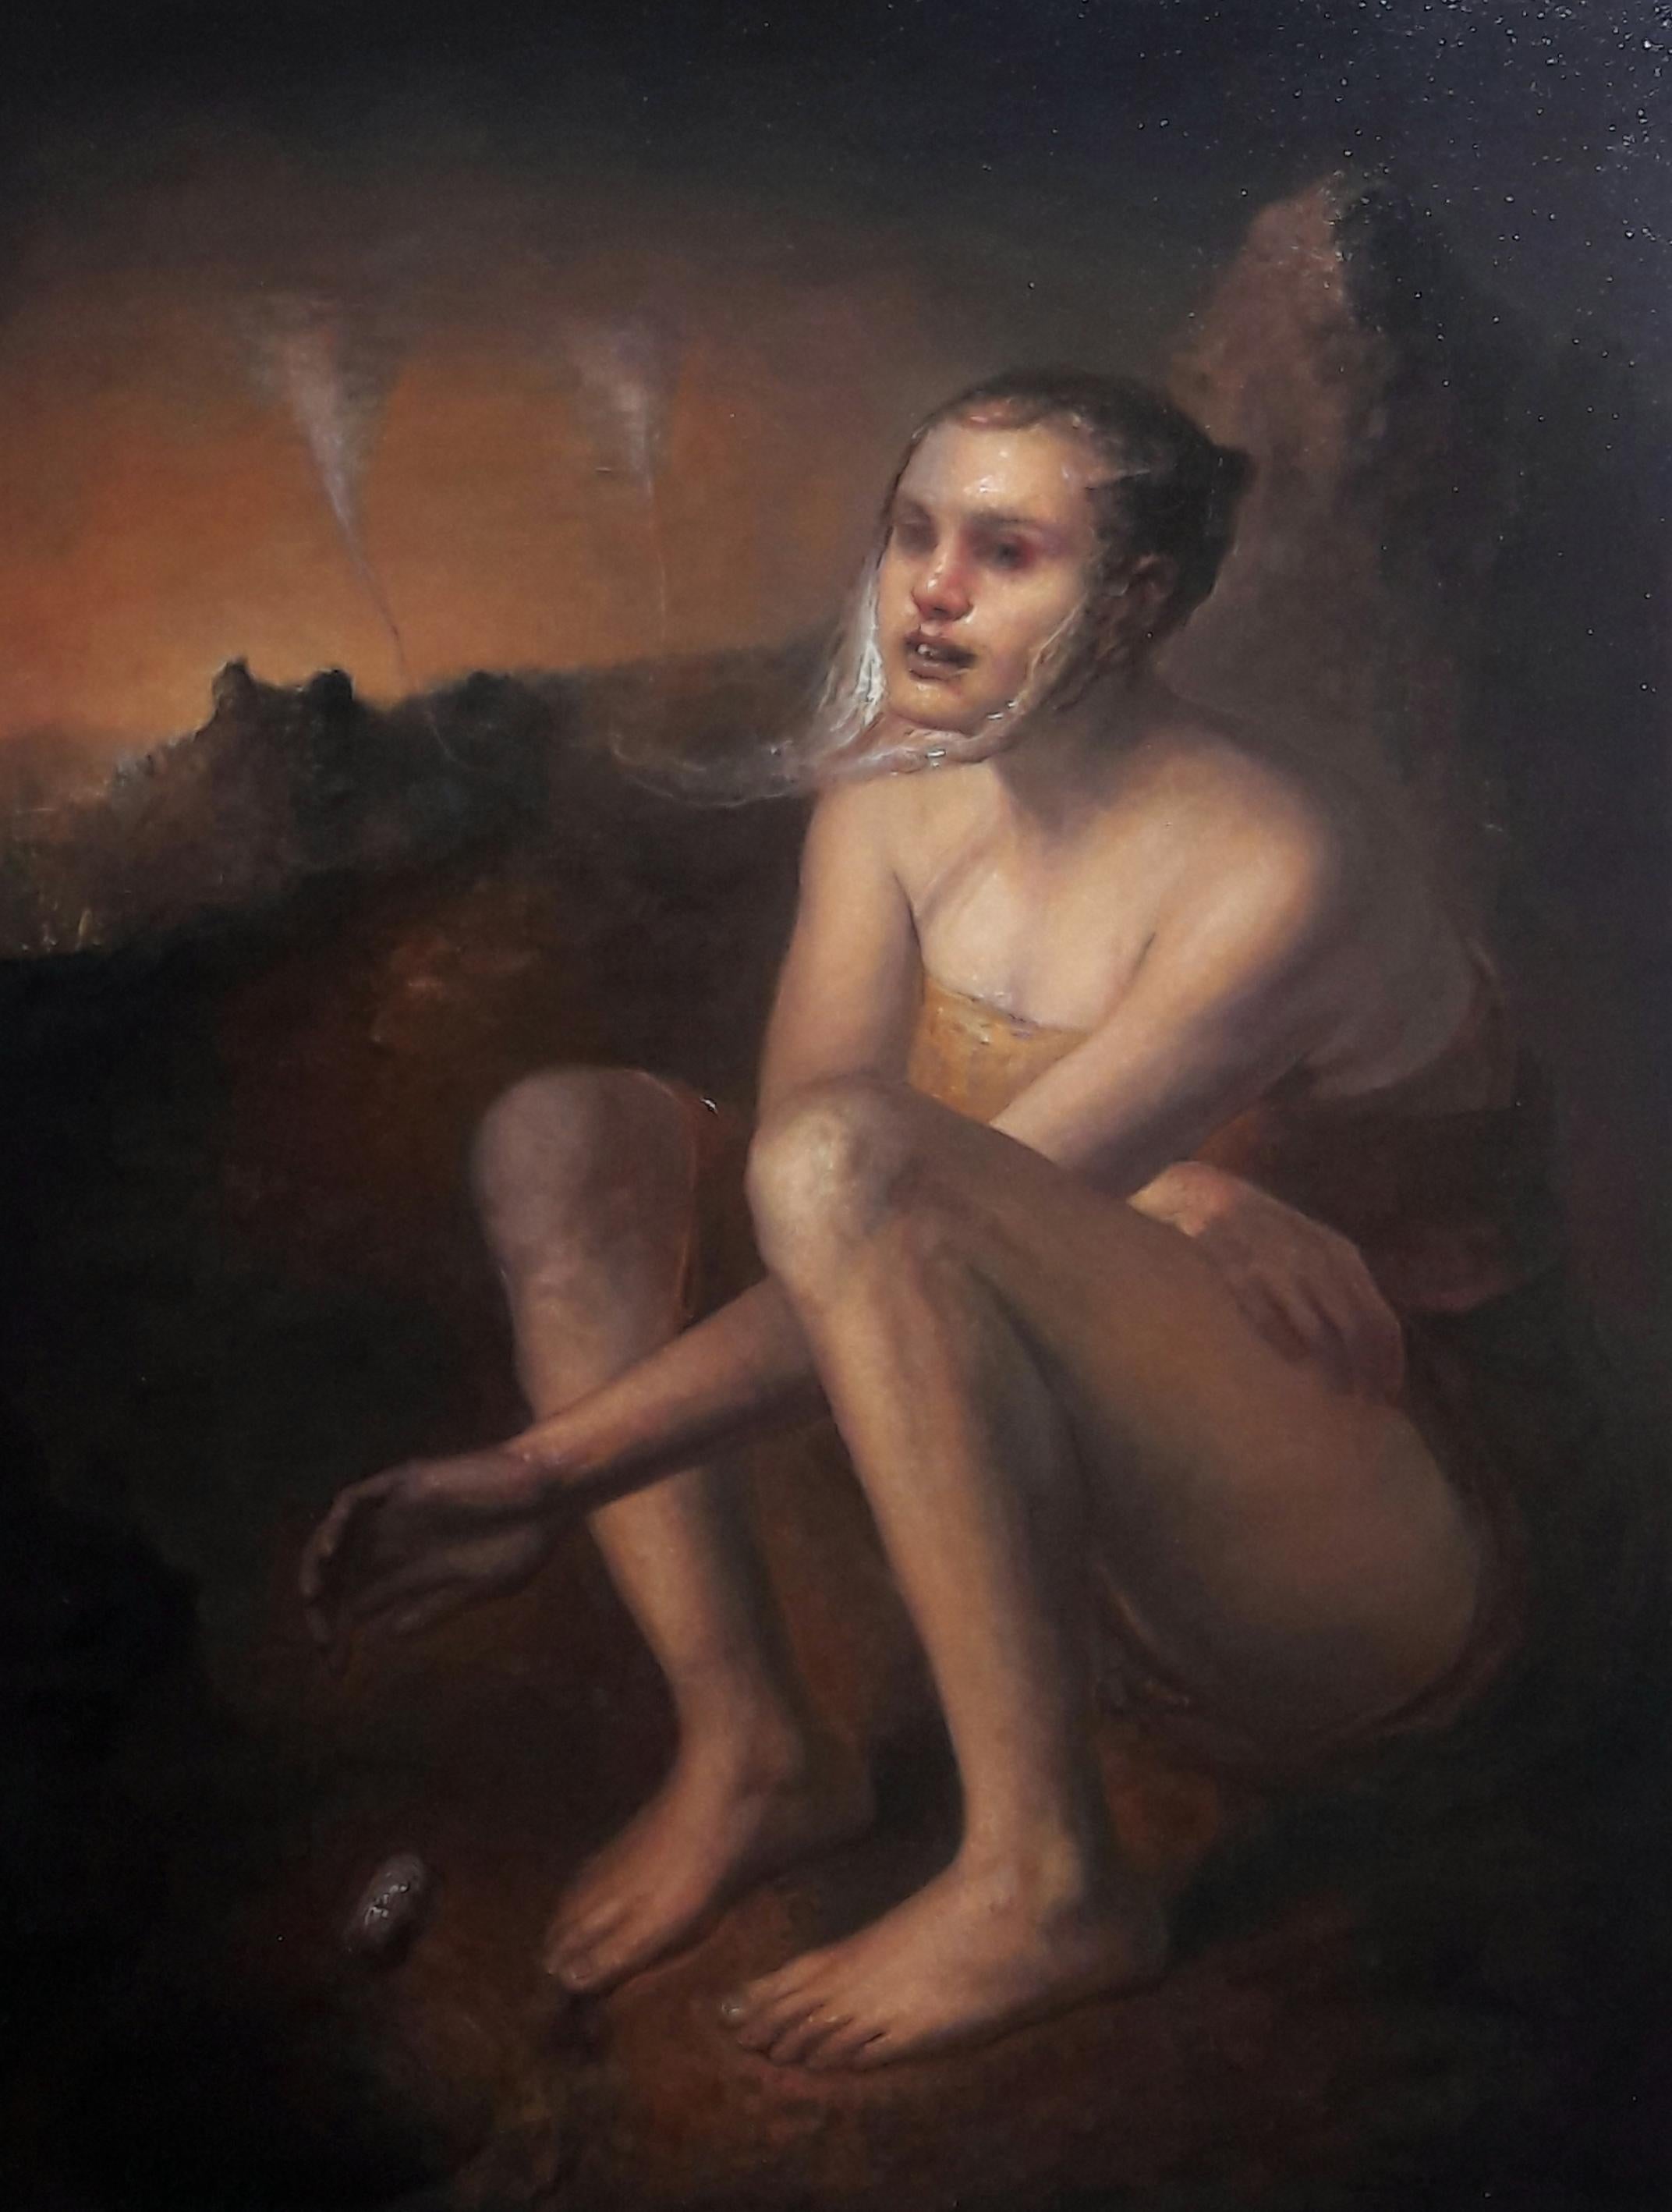 Sertap Yegin Figurative Painting – She war eine Frau – figuratives Ölgemälde in den Farben Braun, Rot, Orange, Schwarz und Blase